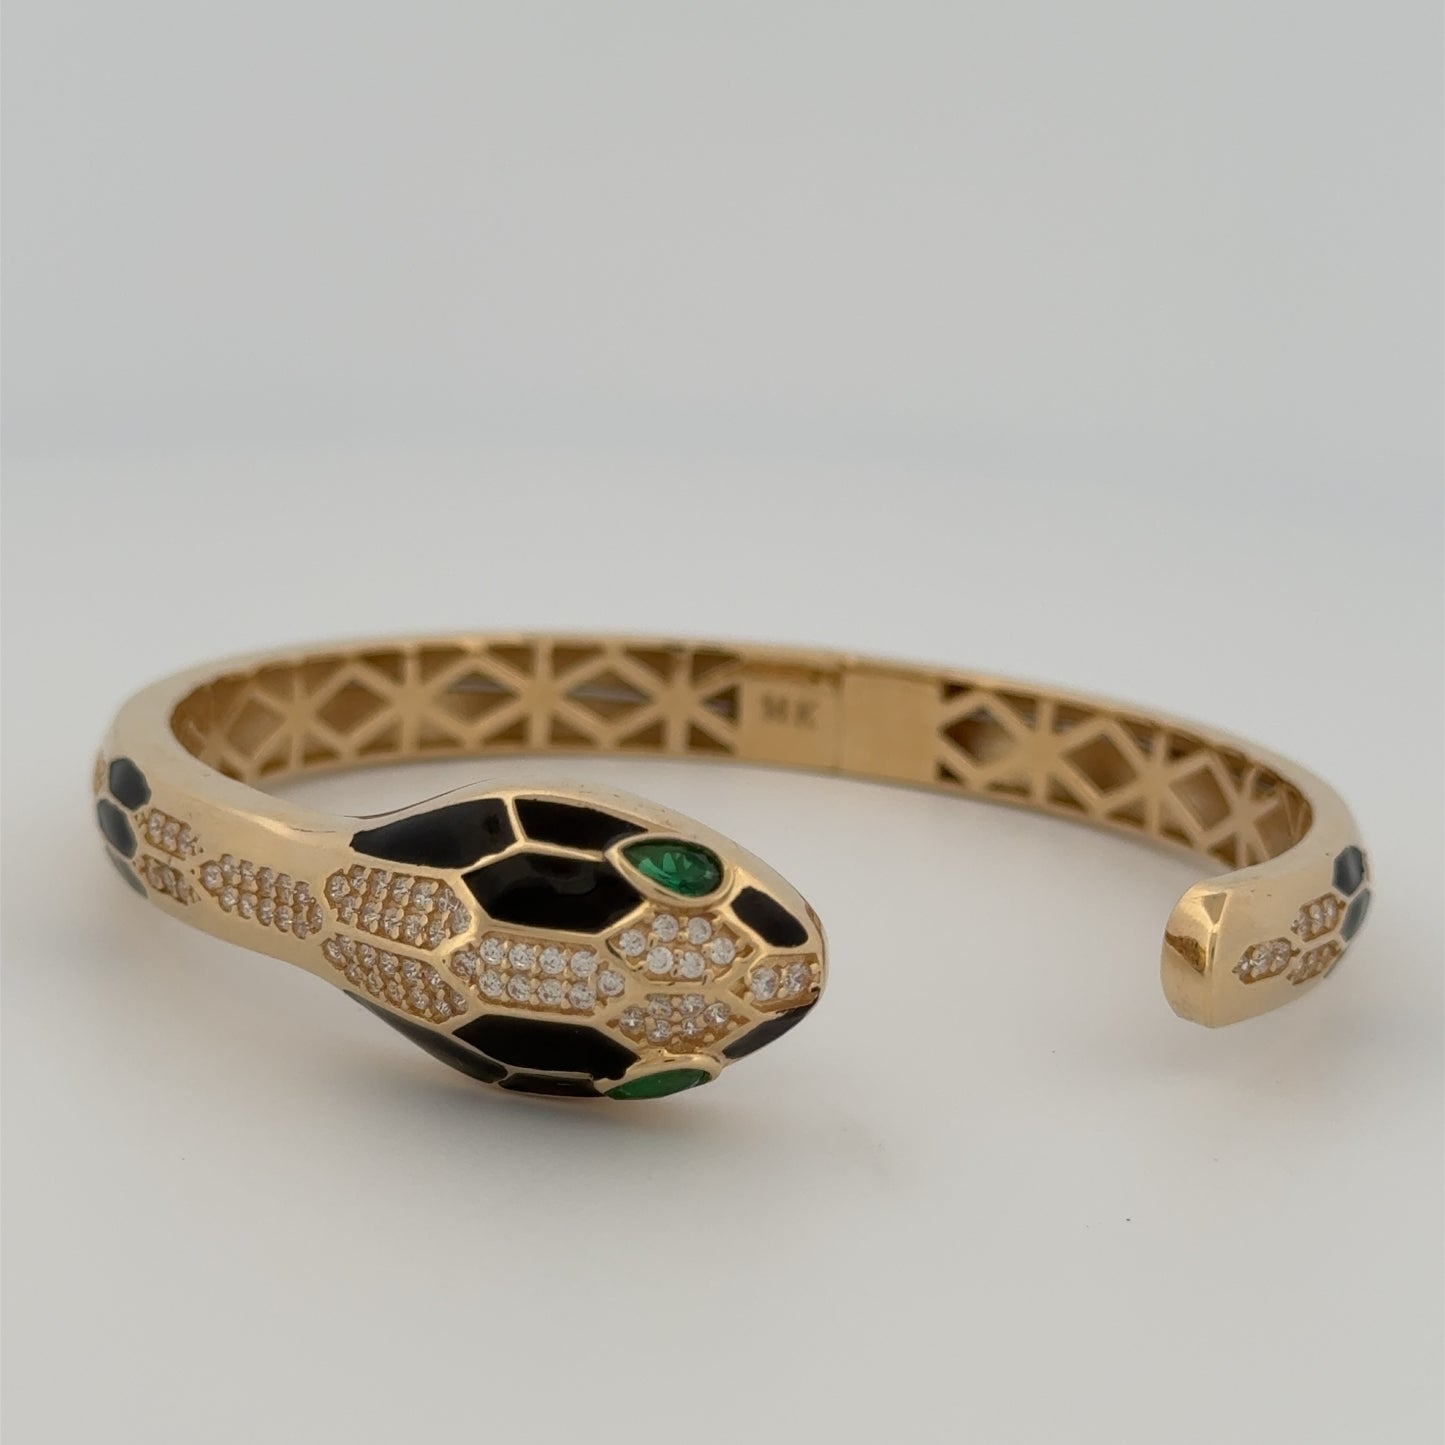 Fancy Serpent Bracelet